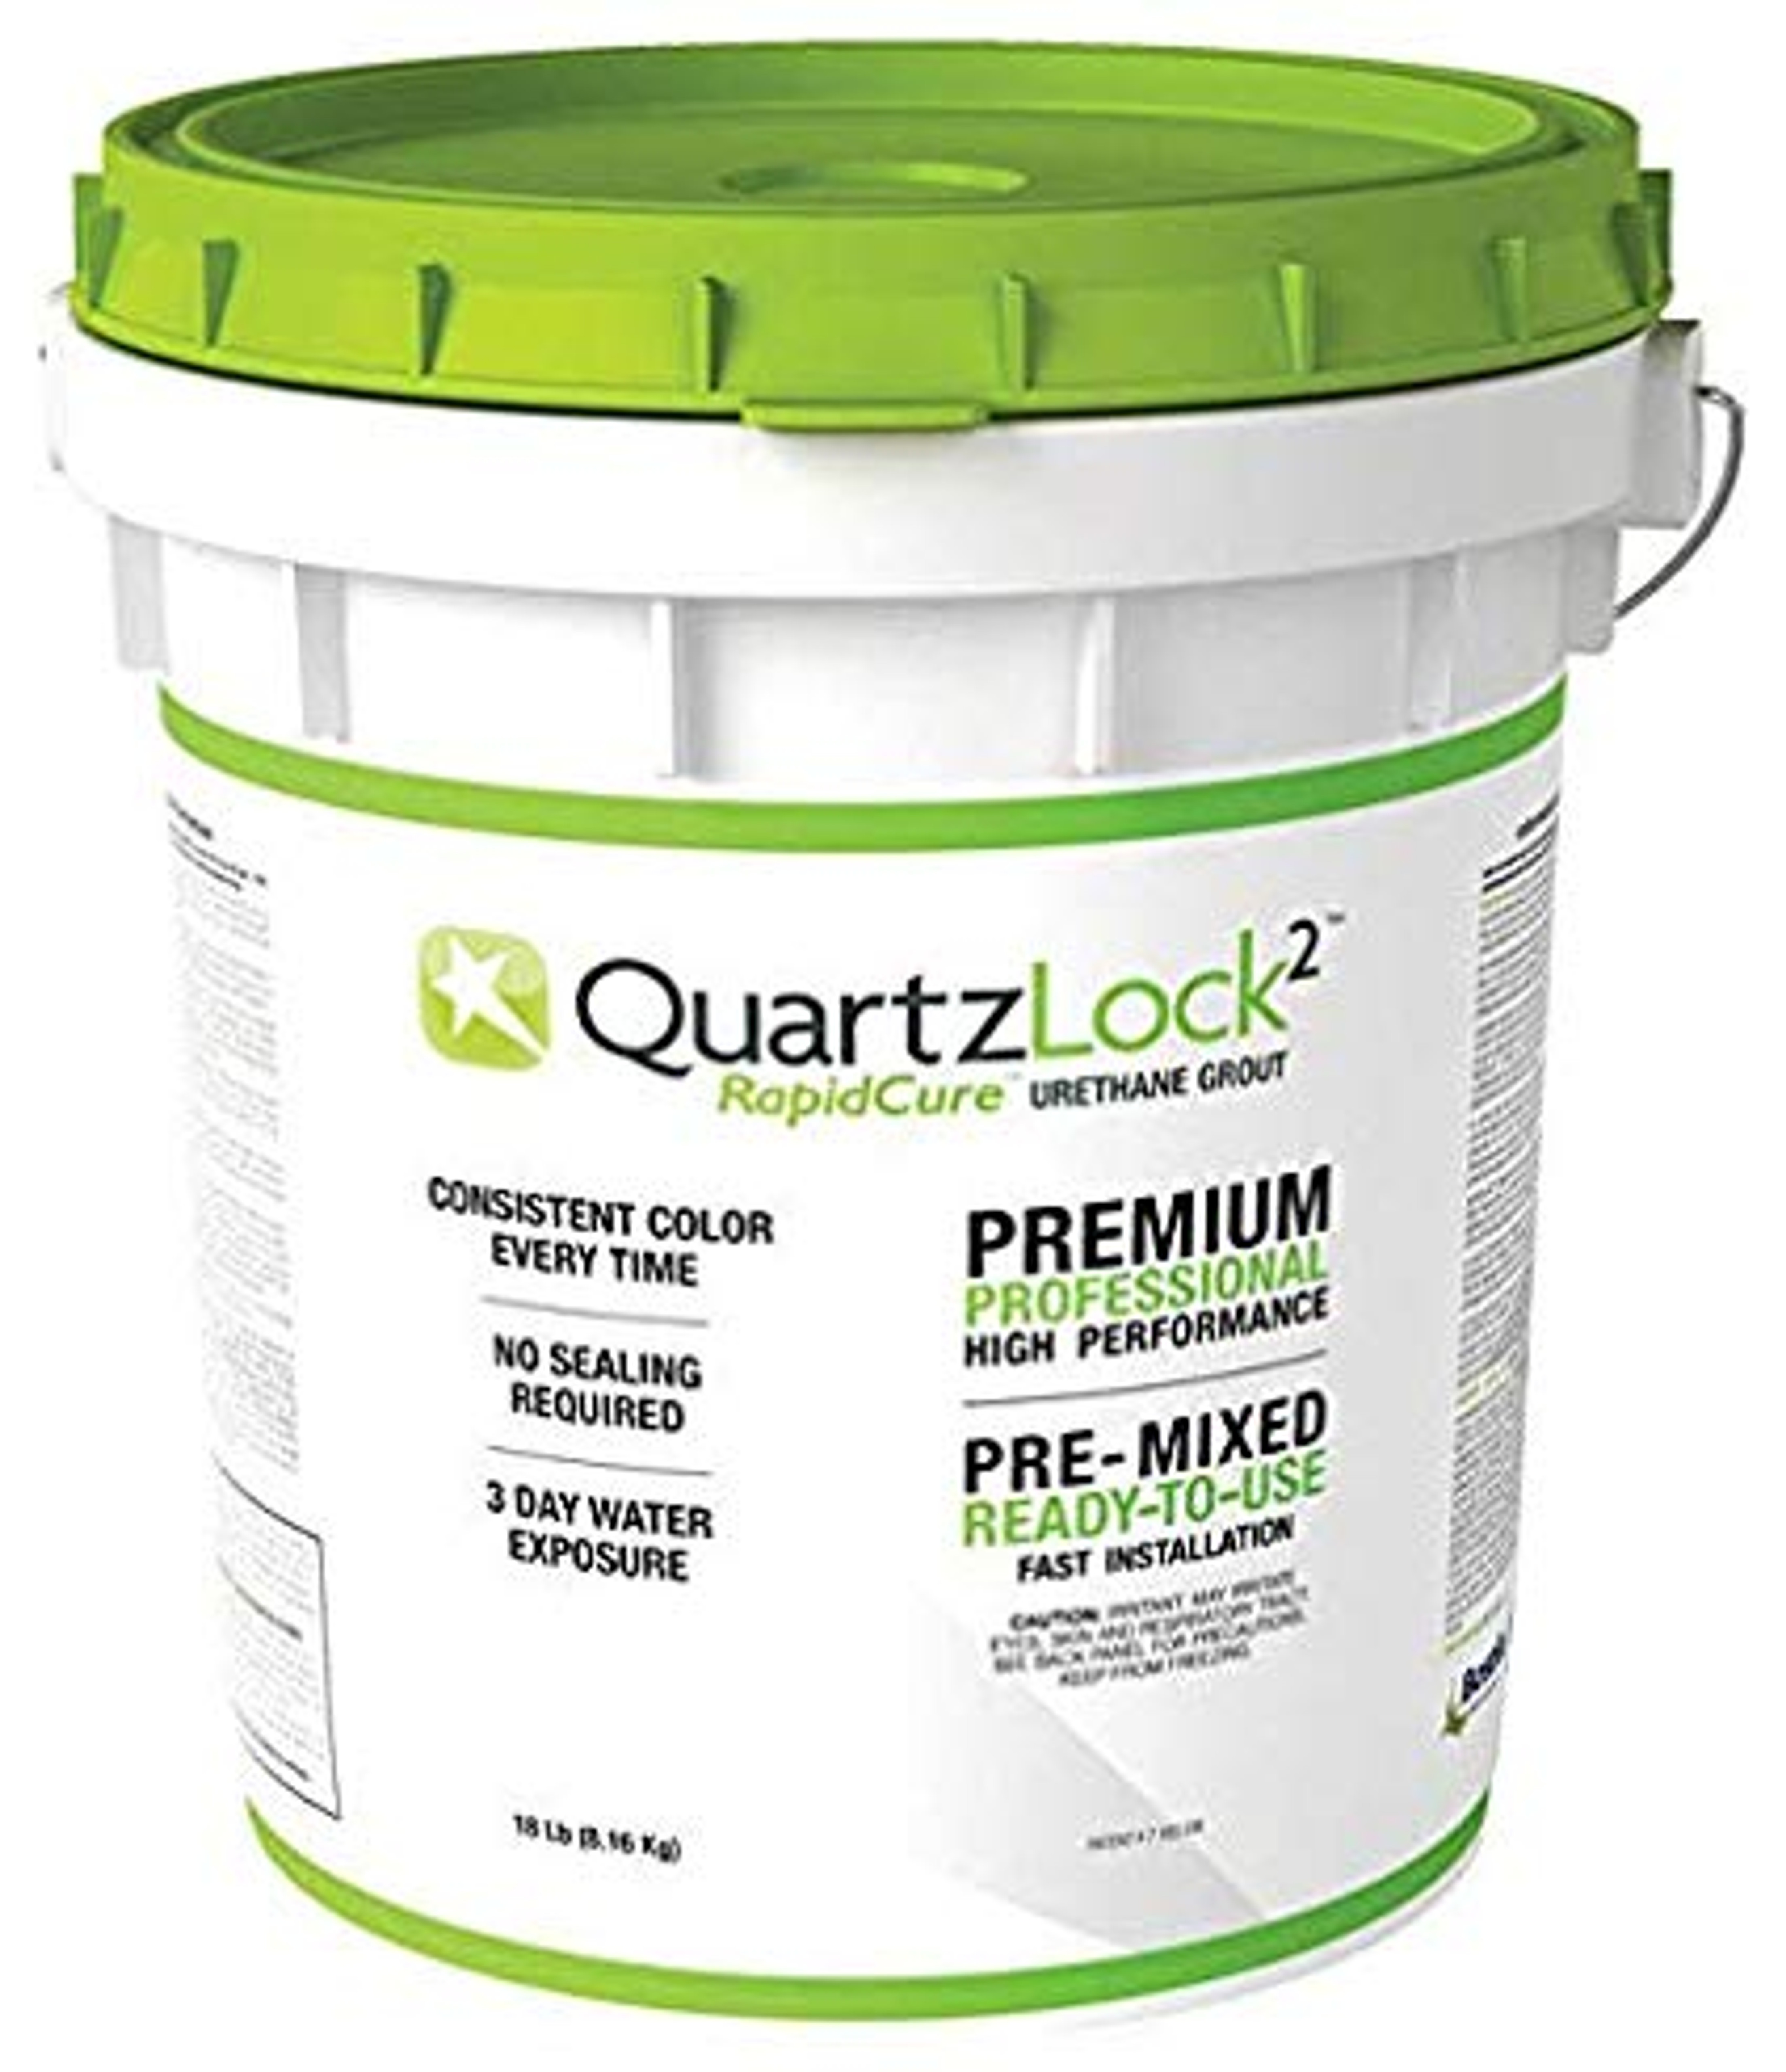 QuartzLock2 Espresso #285 Rapid Cure - Urethane Grout - 9 lb. Pre-Mixed Grout